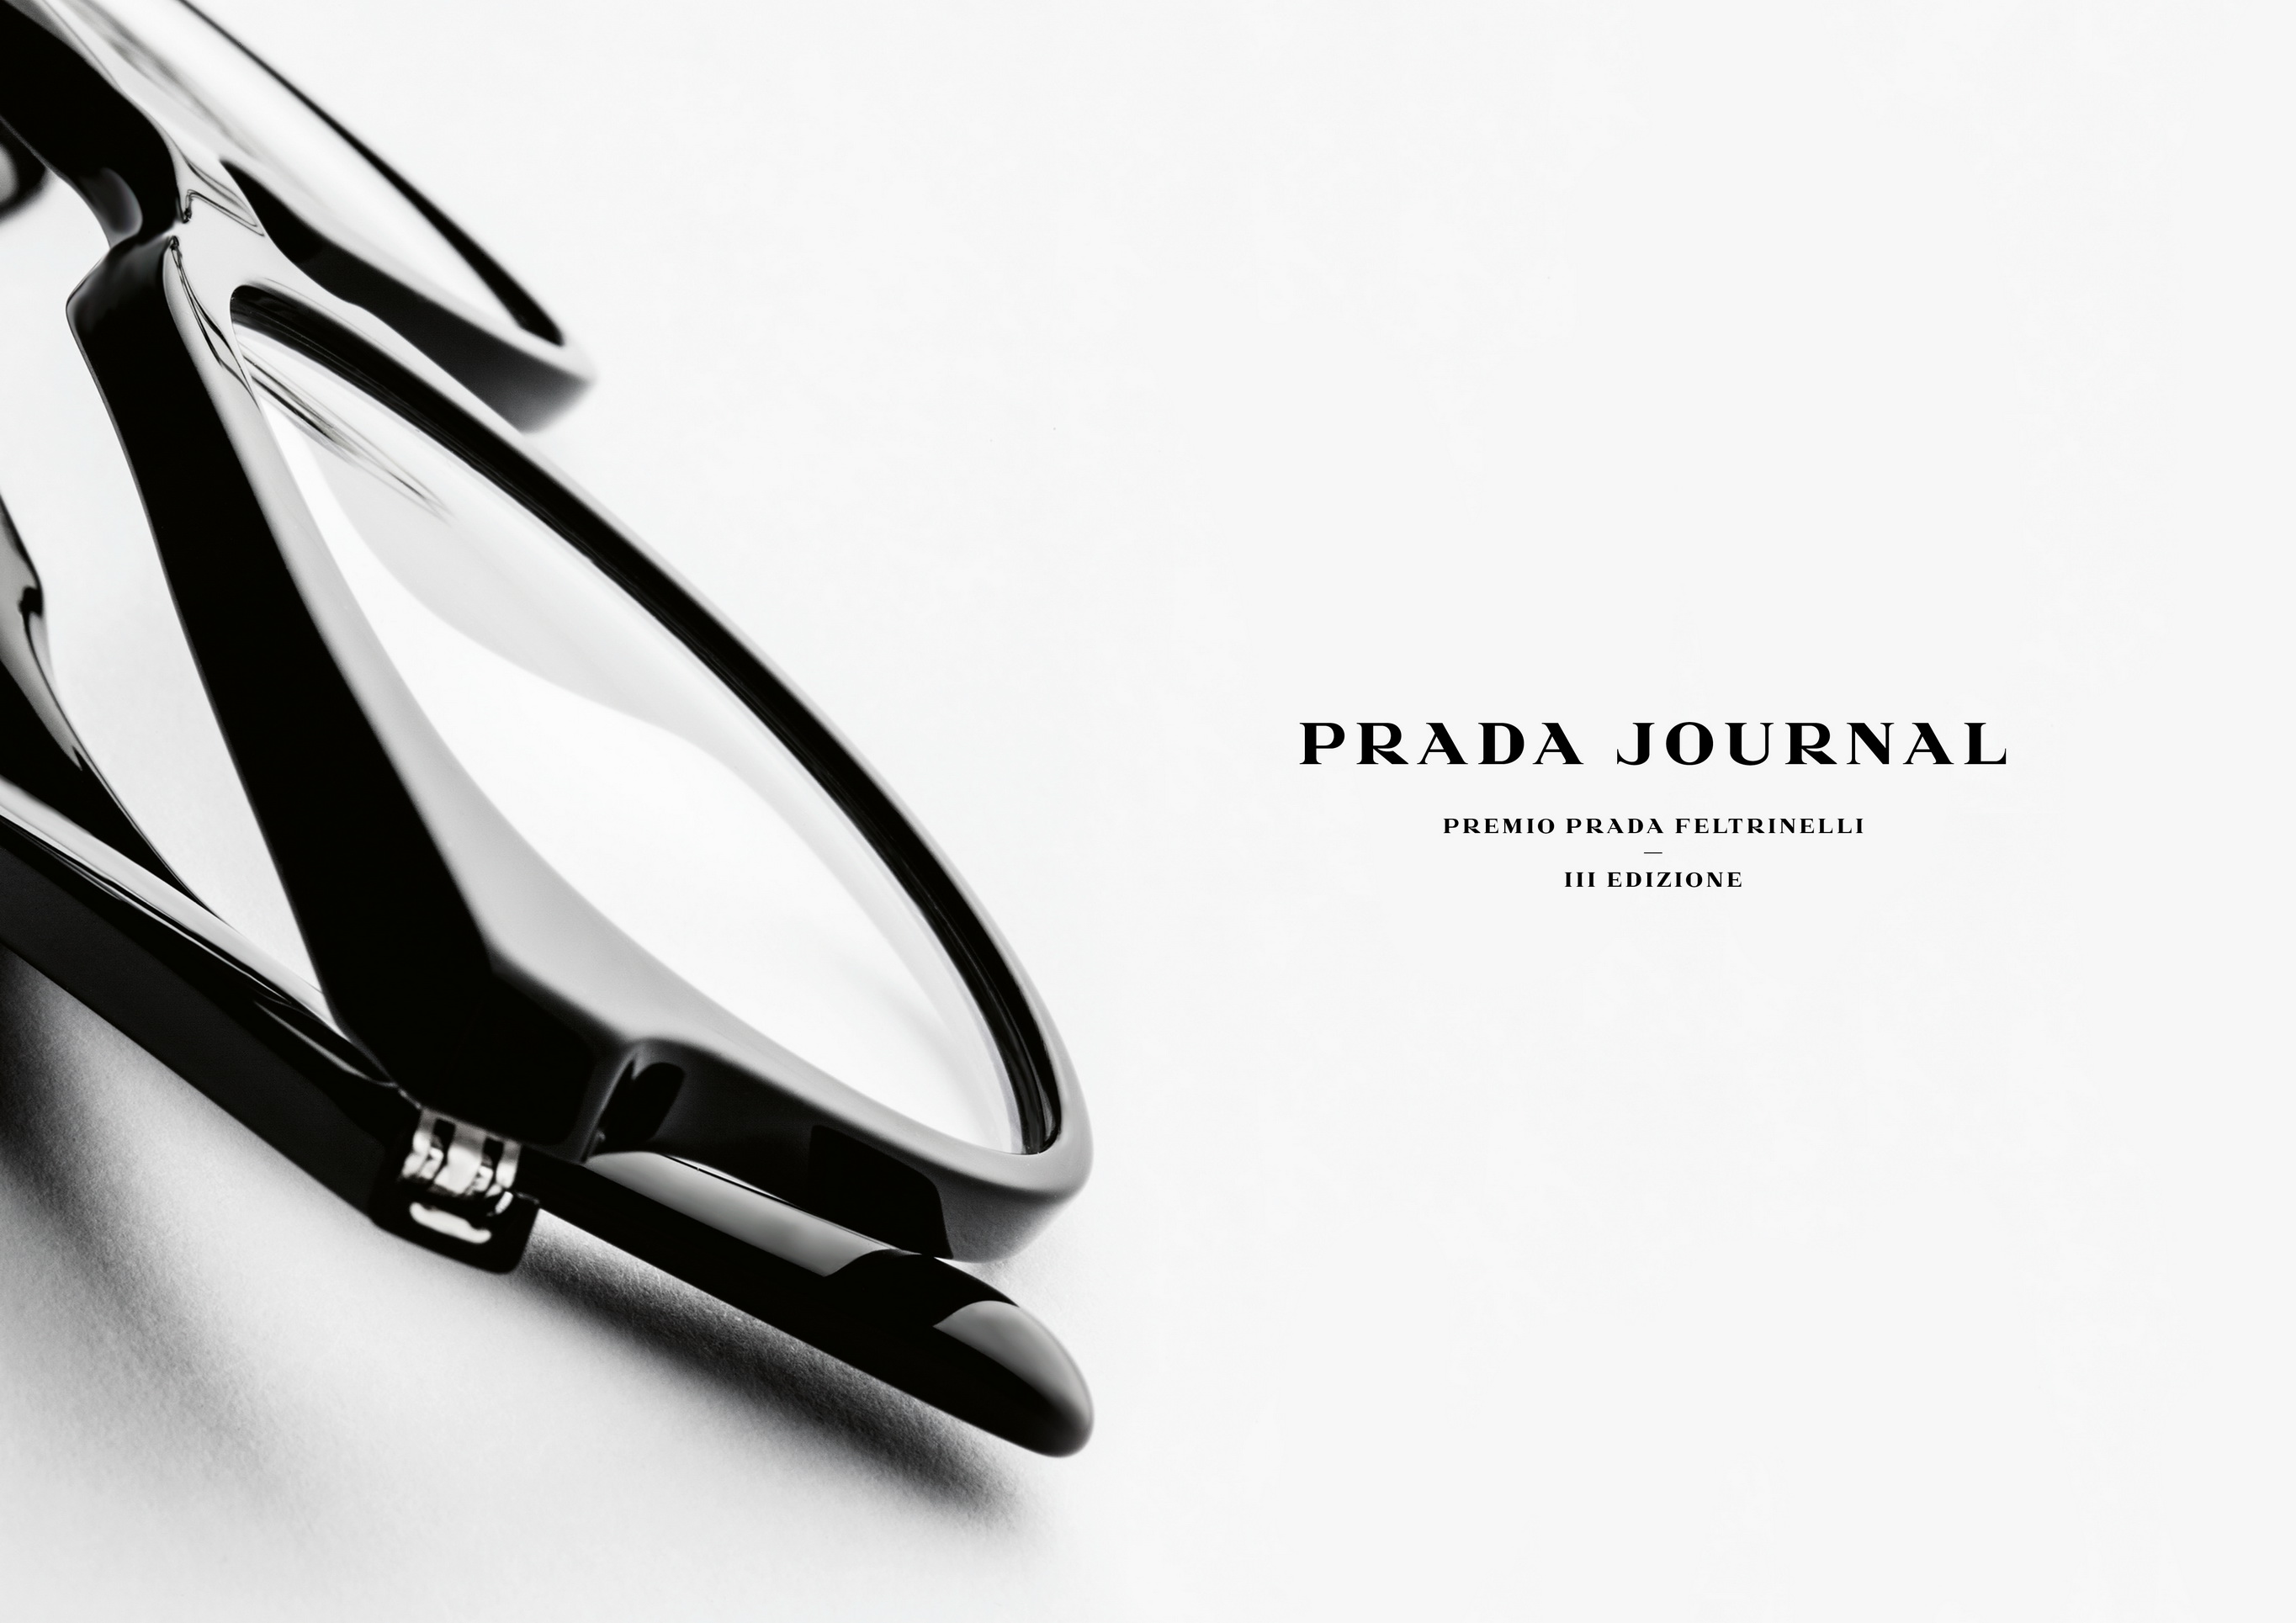 Prada Journal 2015: si apre la terza edizione del concorso letterario con Feltrinelli